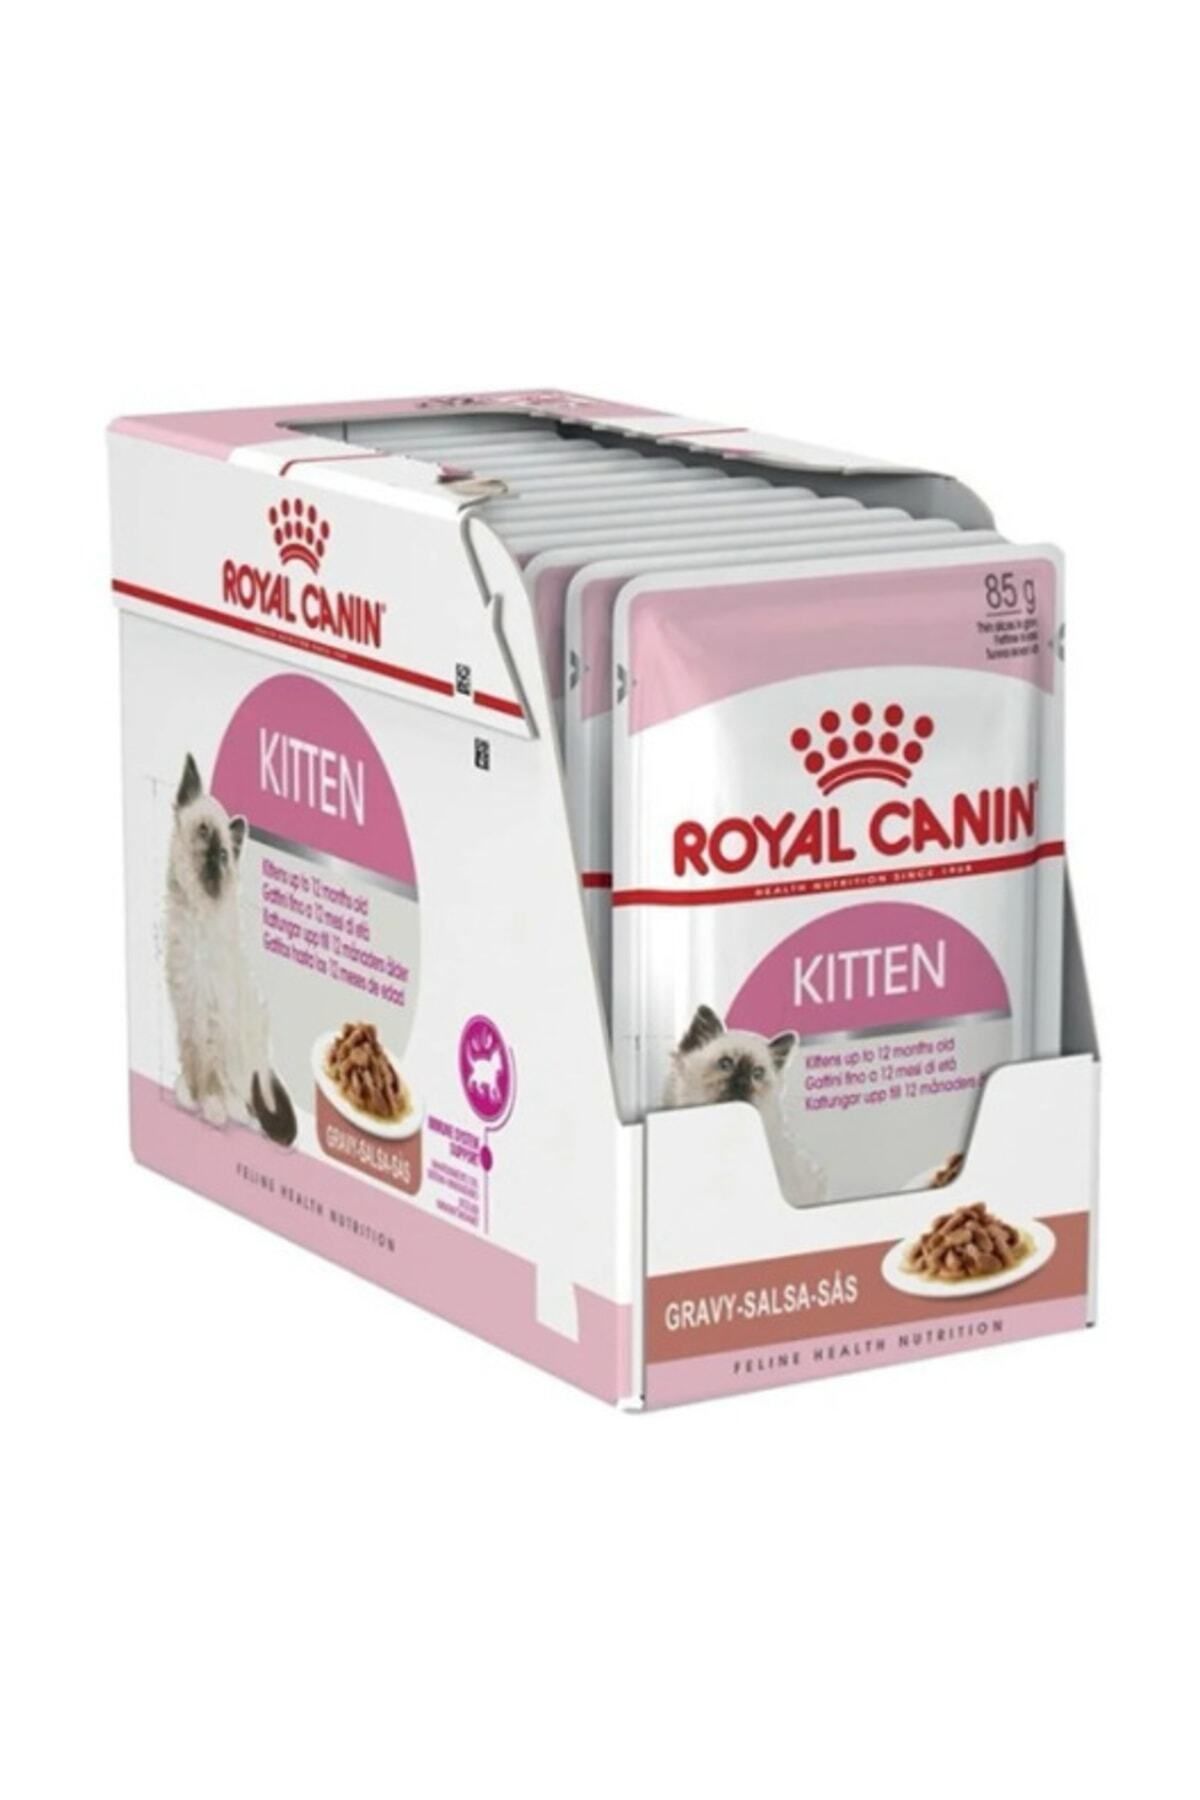 Royal Canin Kitten İnstinctive Gravy 12 Li